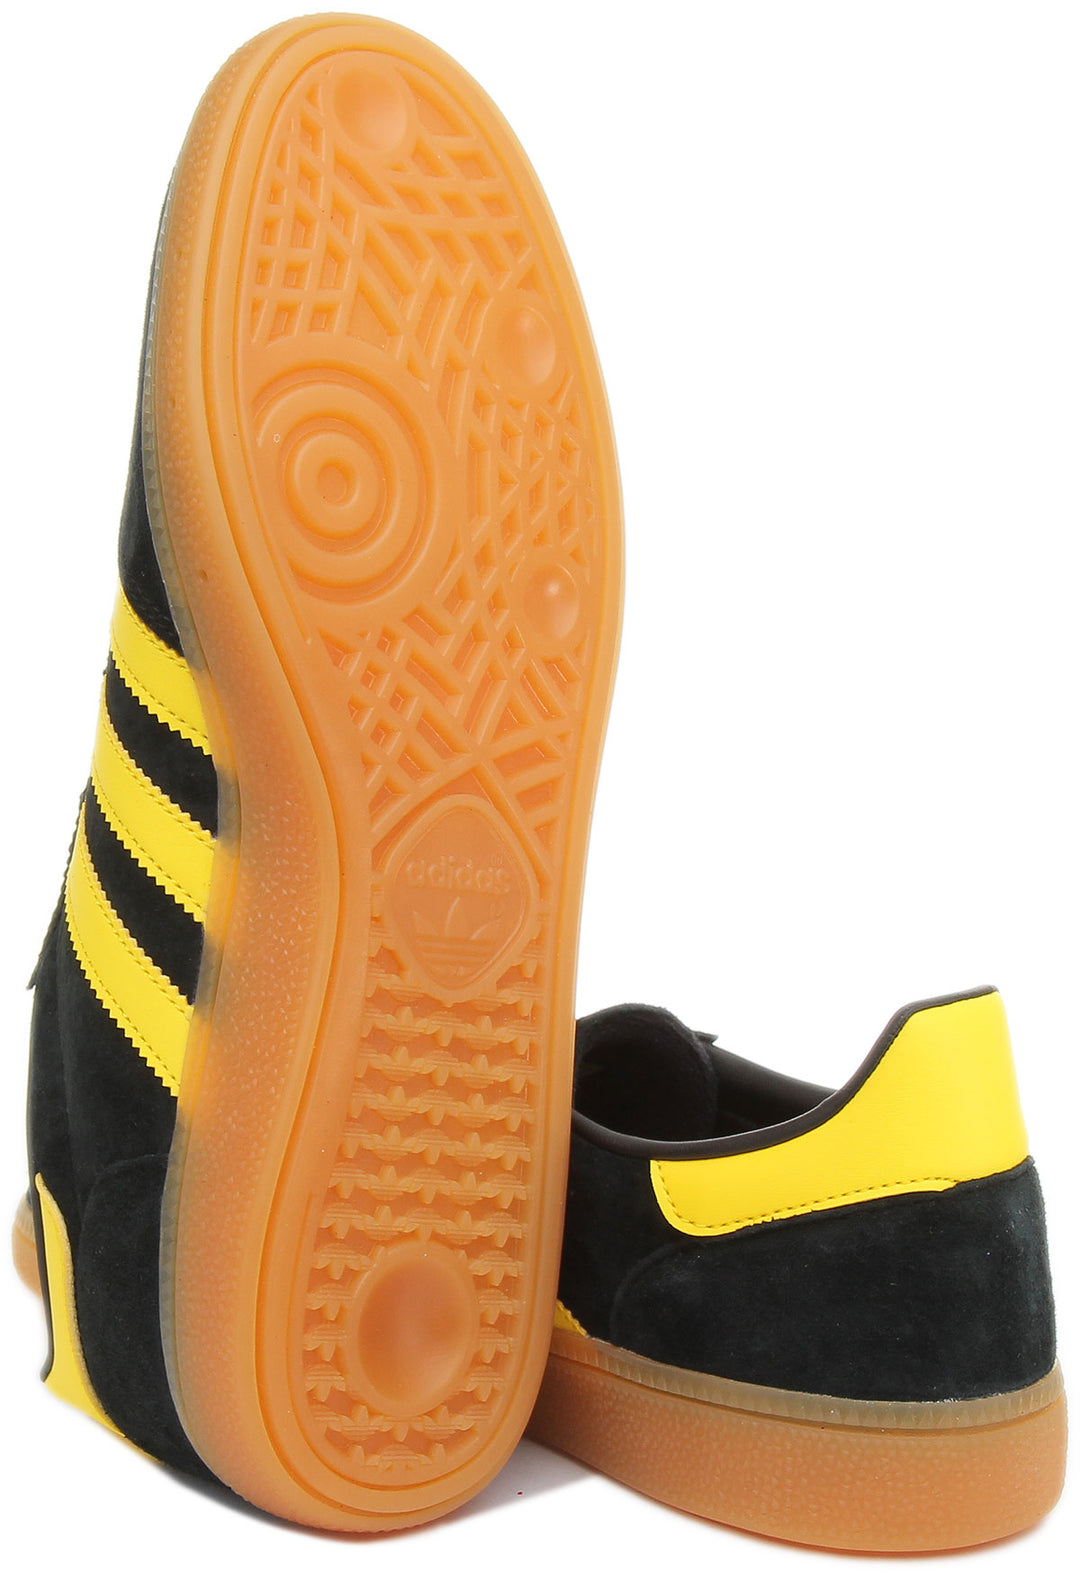 Adidas Handball Spezial Scarpe da ginnastica casual da uomo in stile anni '70 in nero giallo